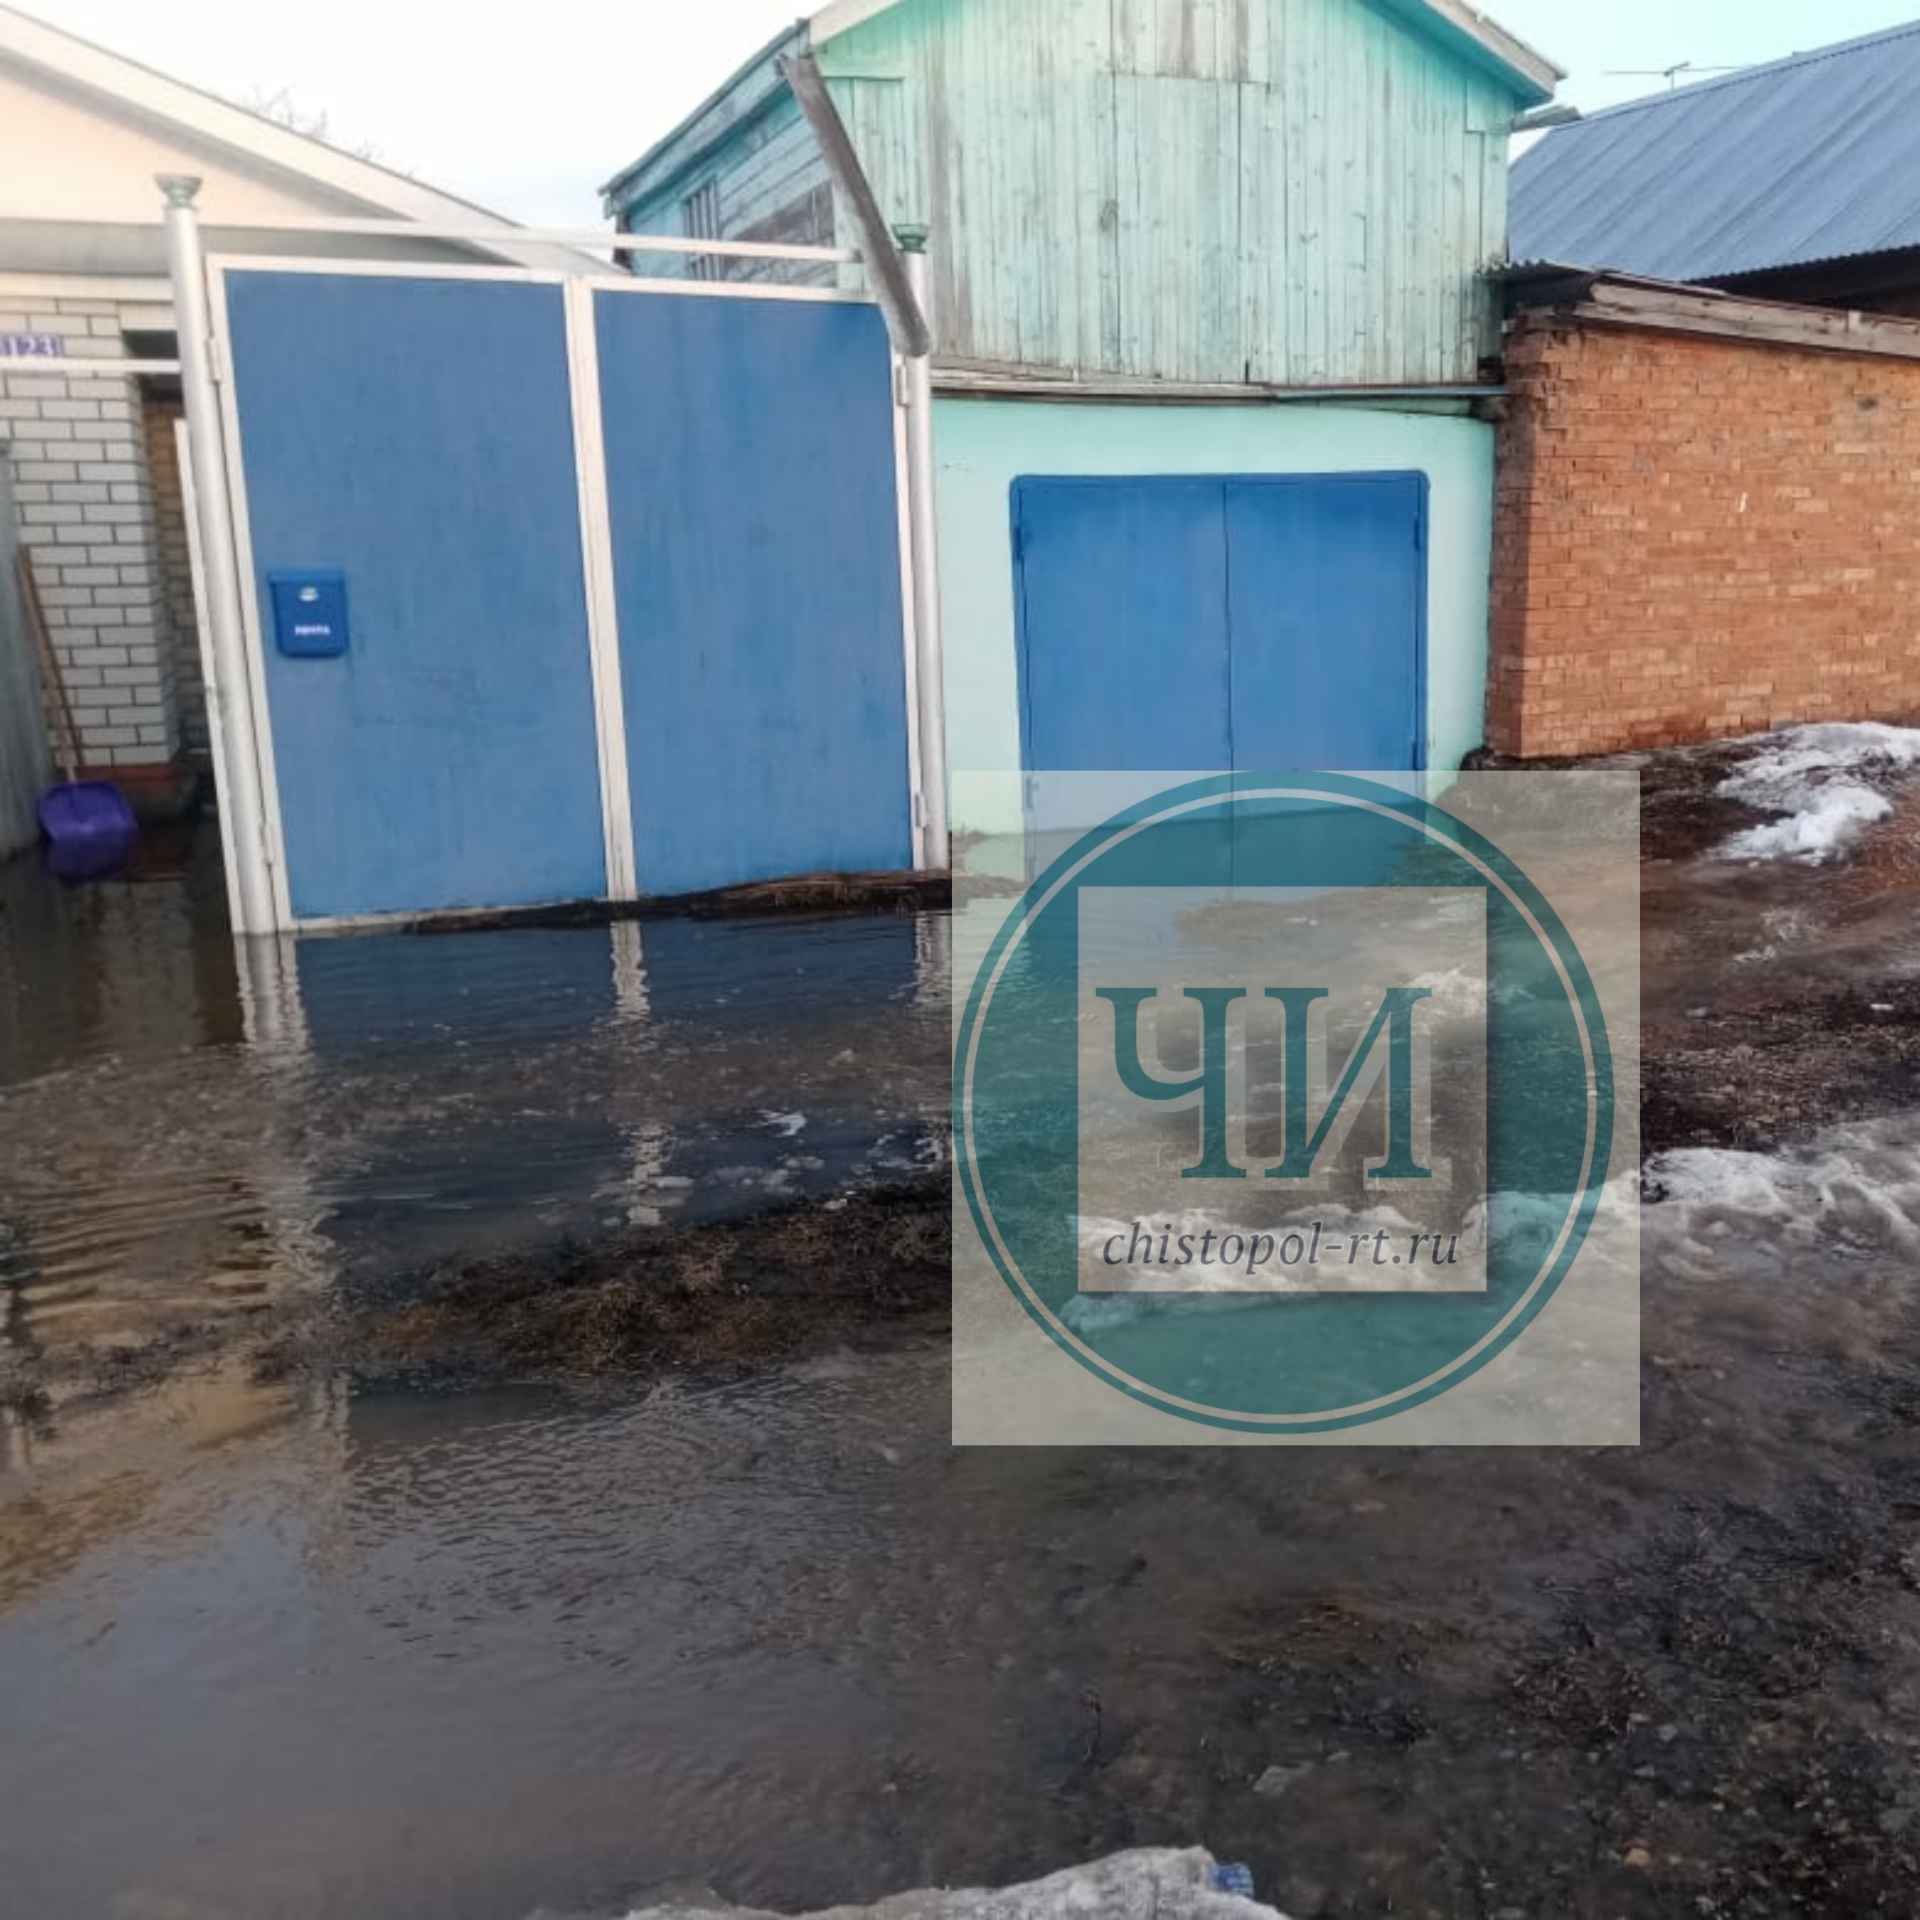 Дома чистопольцев по улице Хамзина утопают в воде